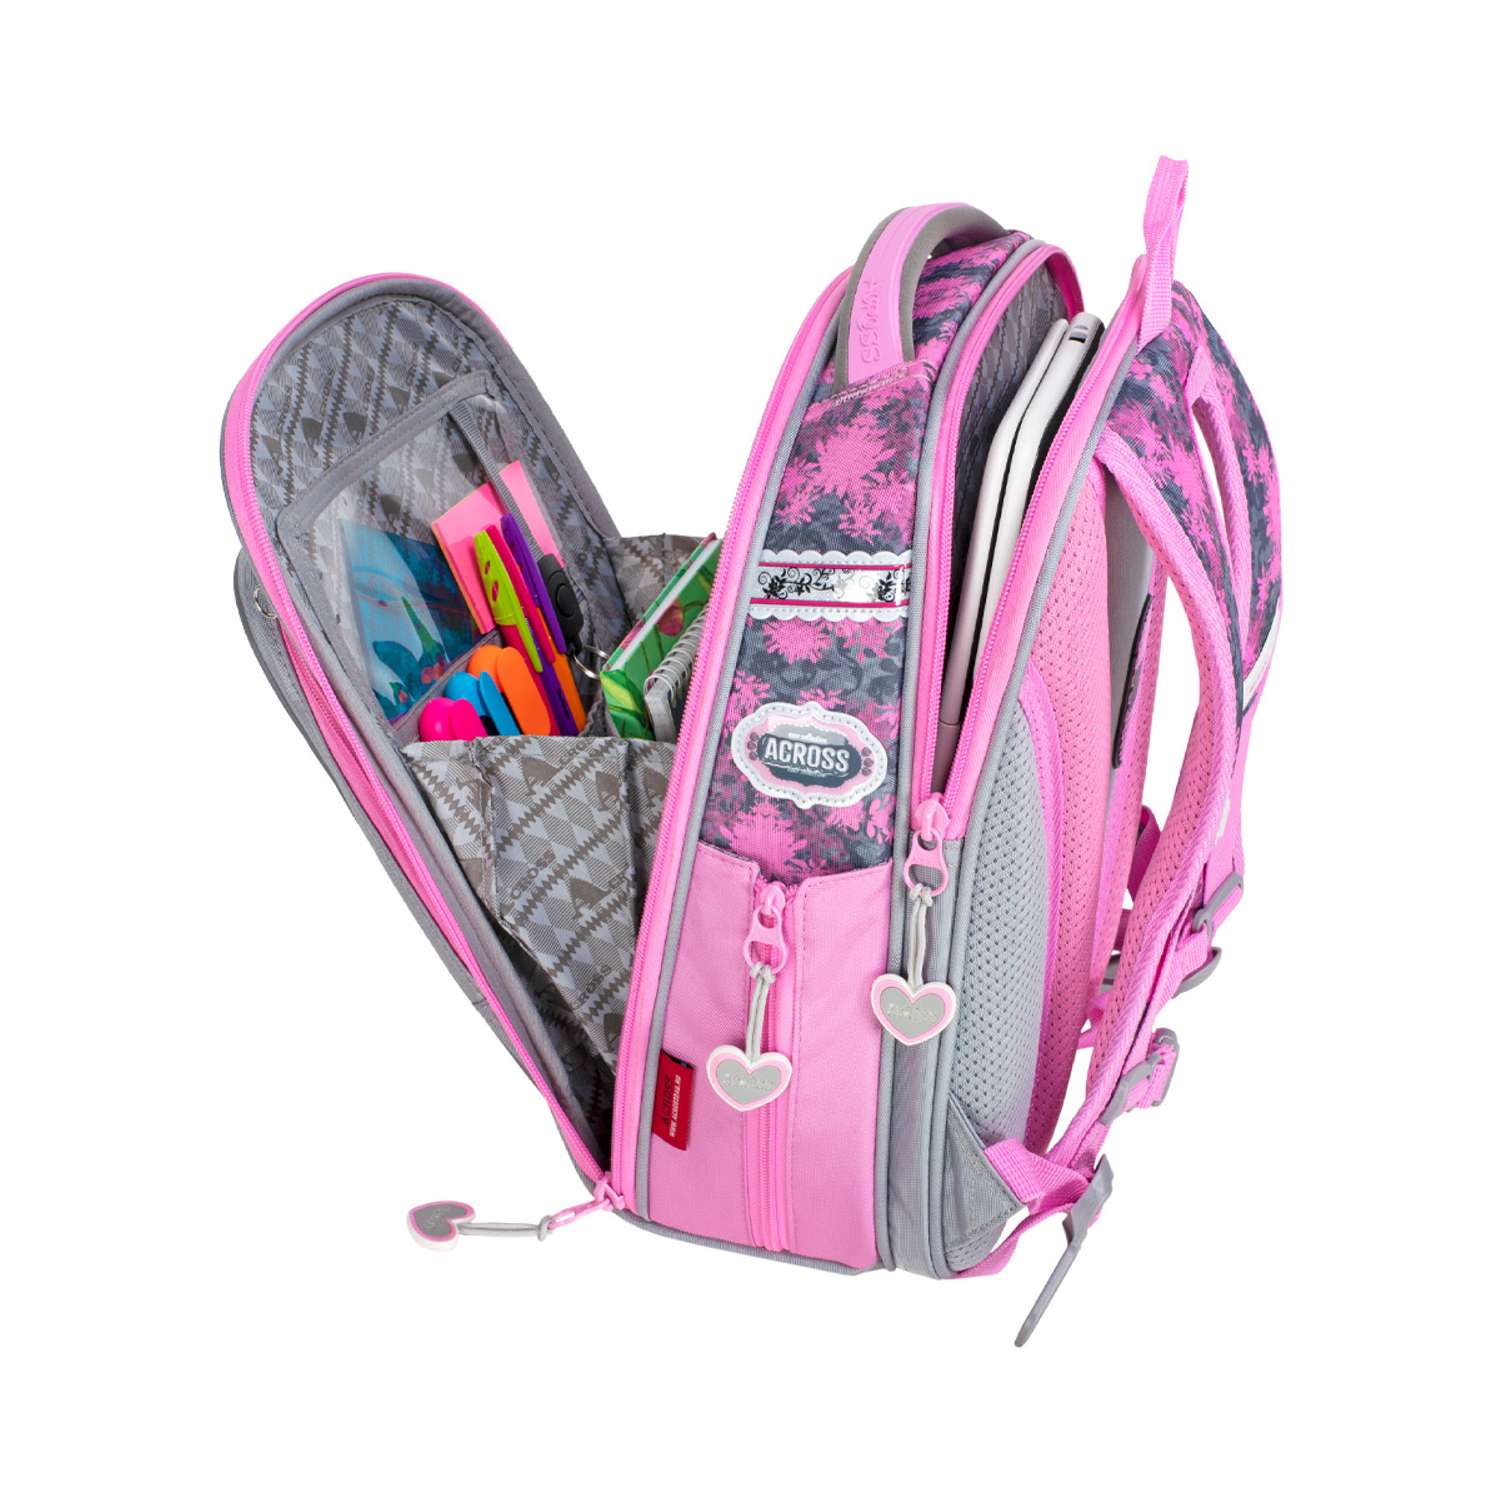 Рюкзак школьный ACROSS с наполнением: мешок для обуви пенал папка и брелок - фото 3